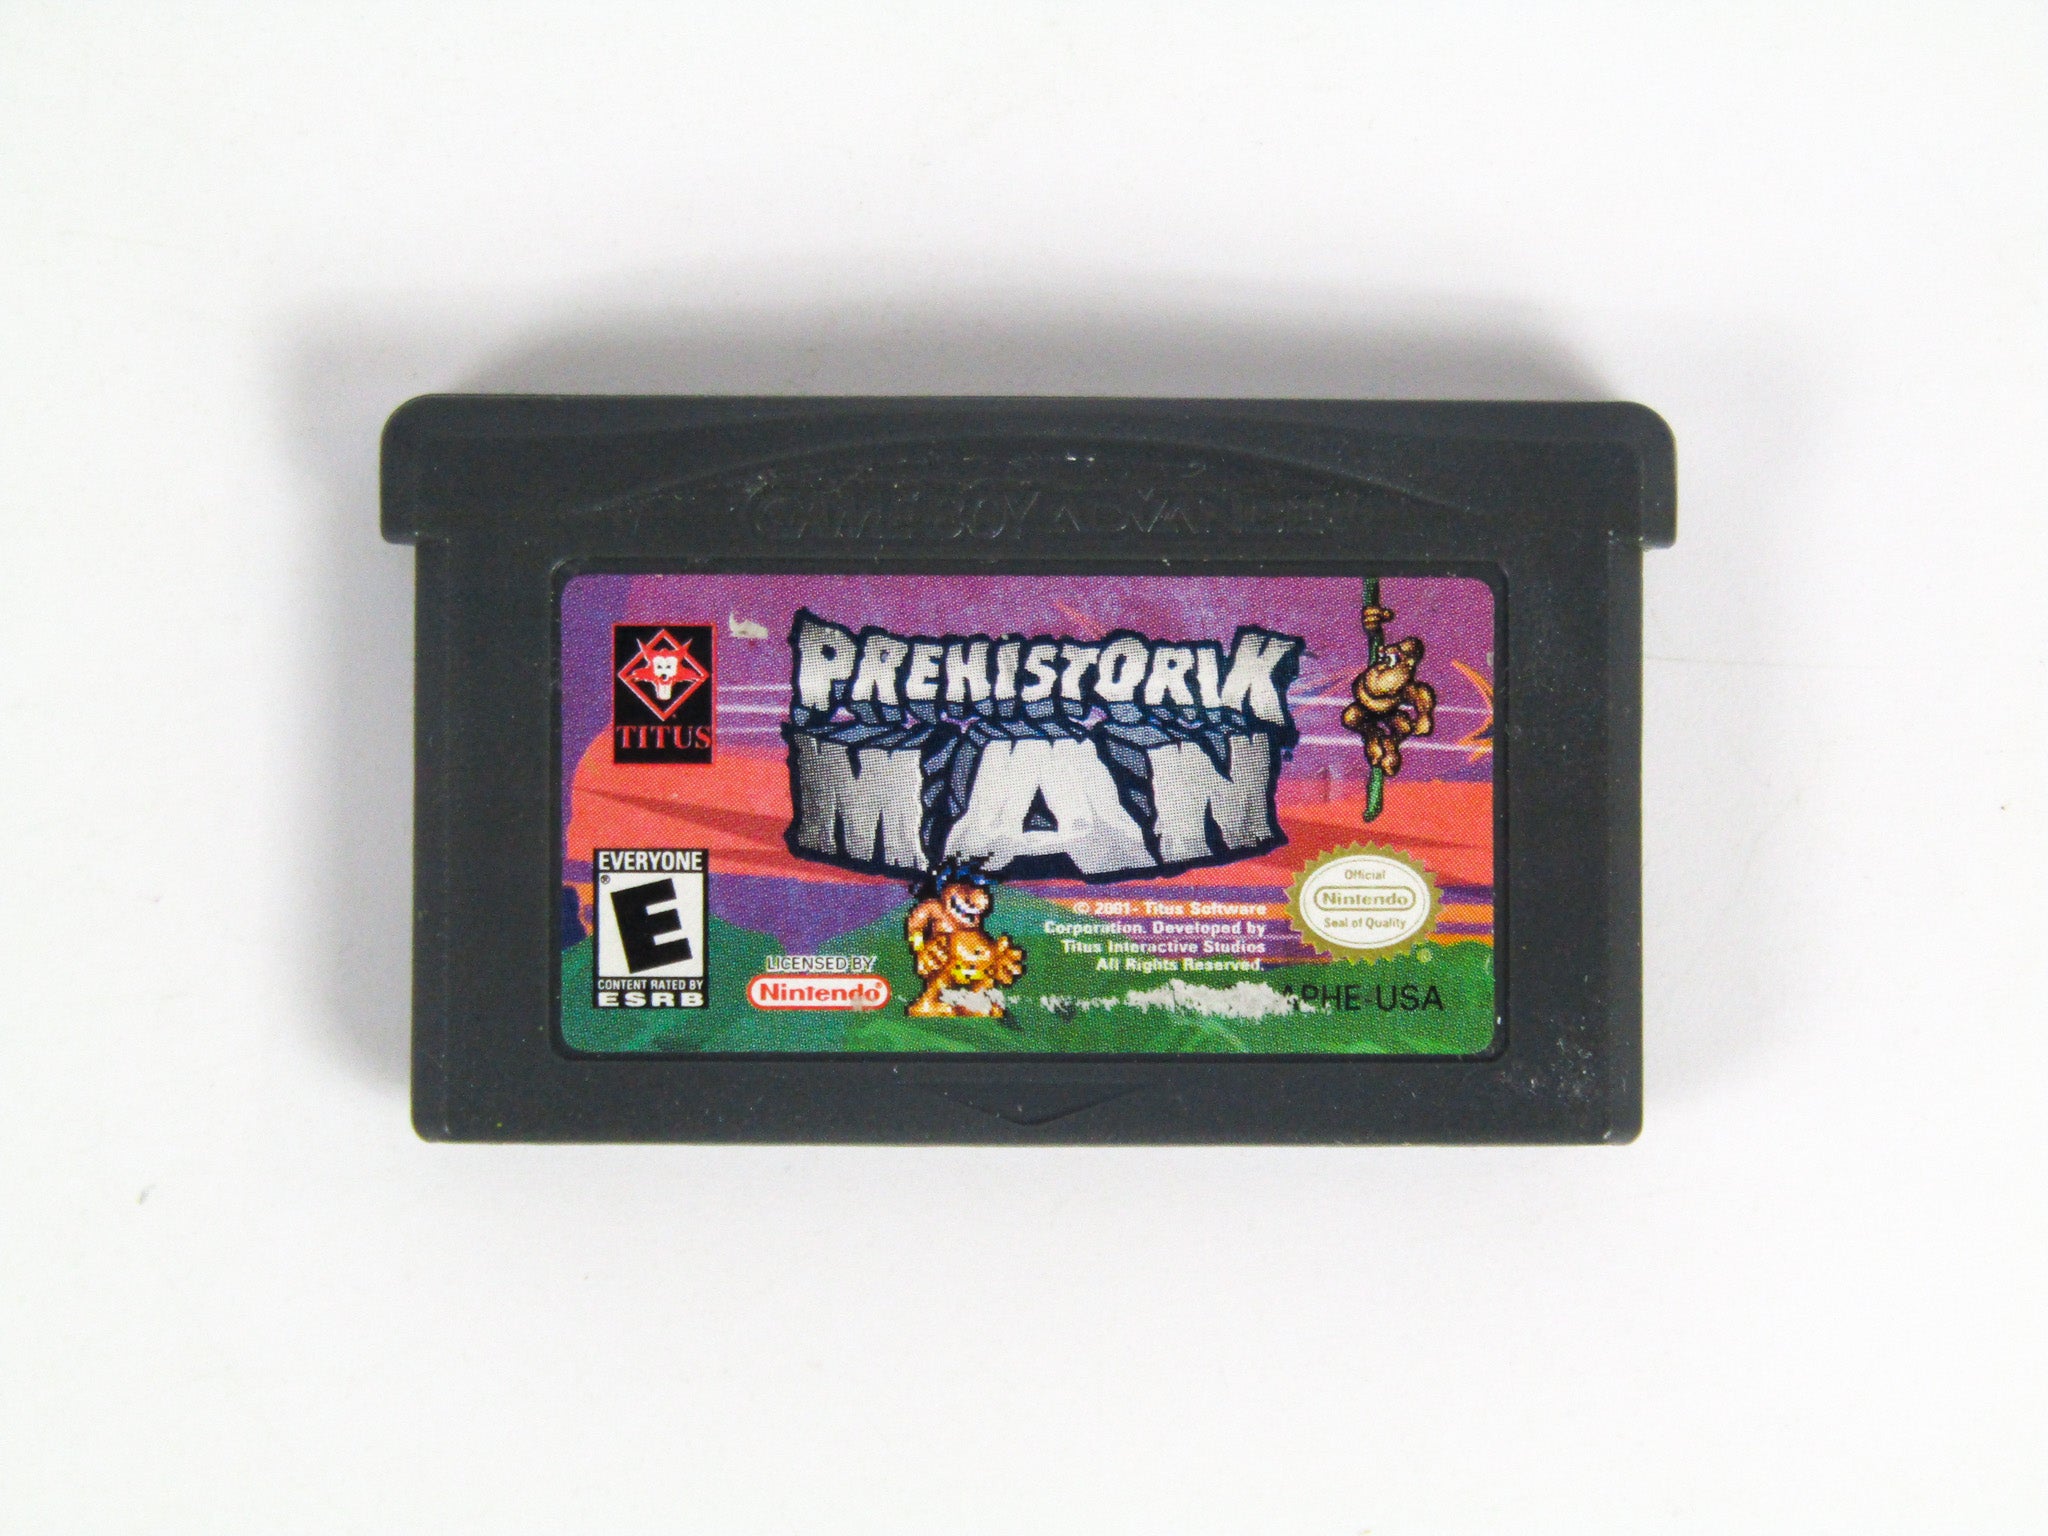 Prehistorik Man (Game Boy Advance / GBA) – RetroMTL